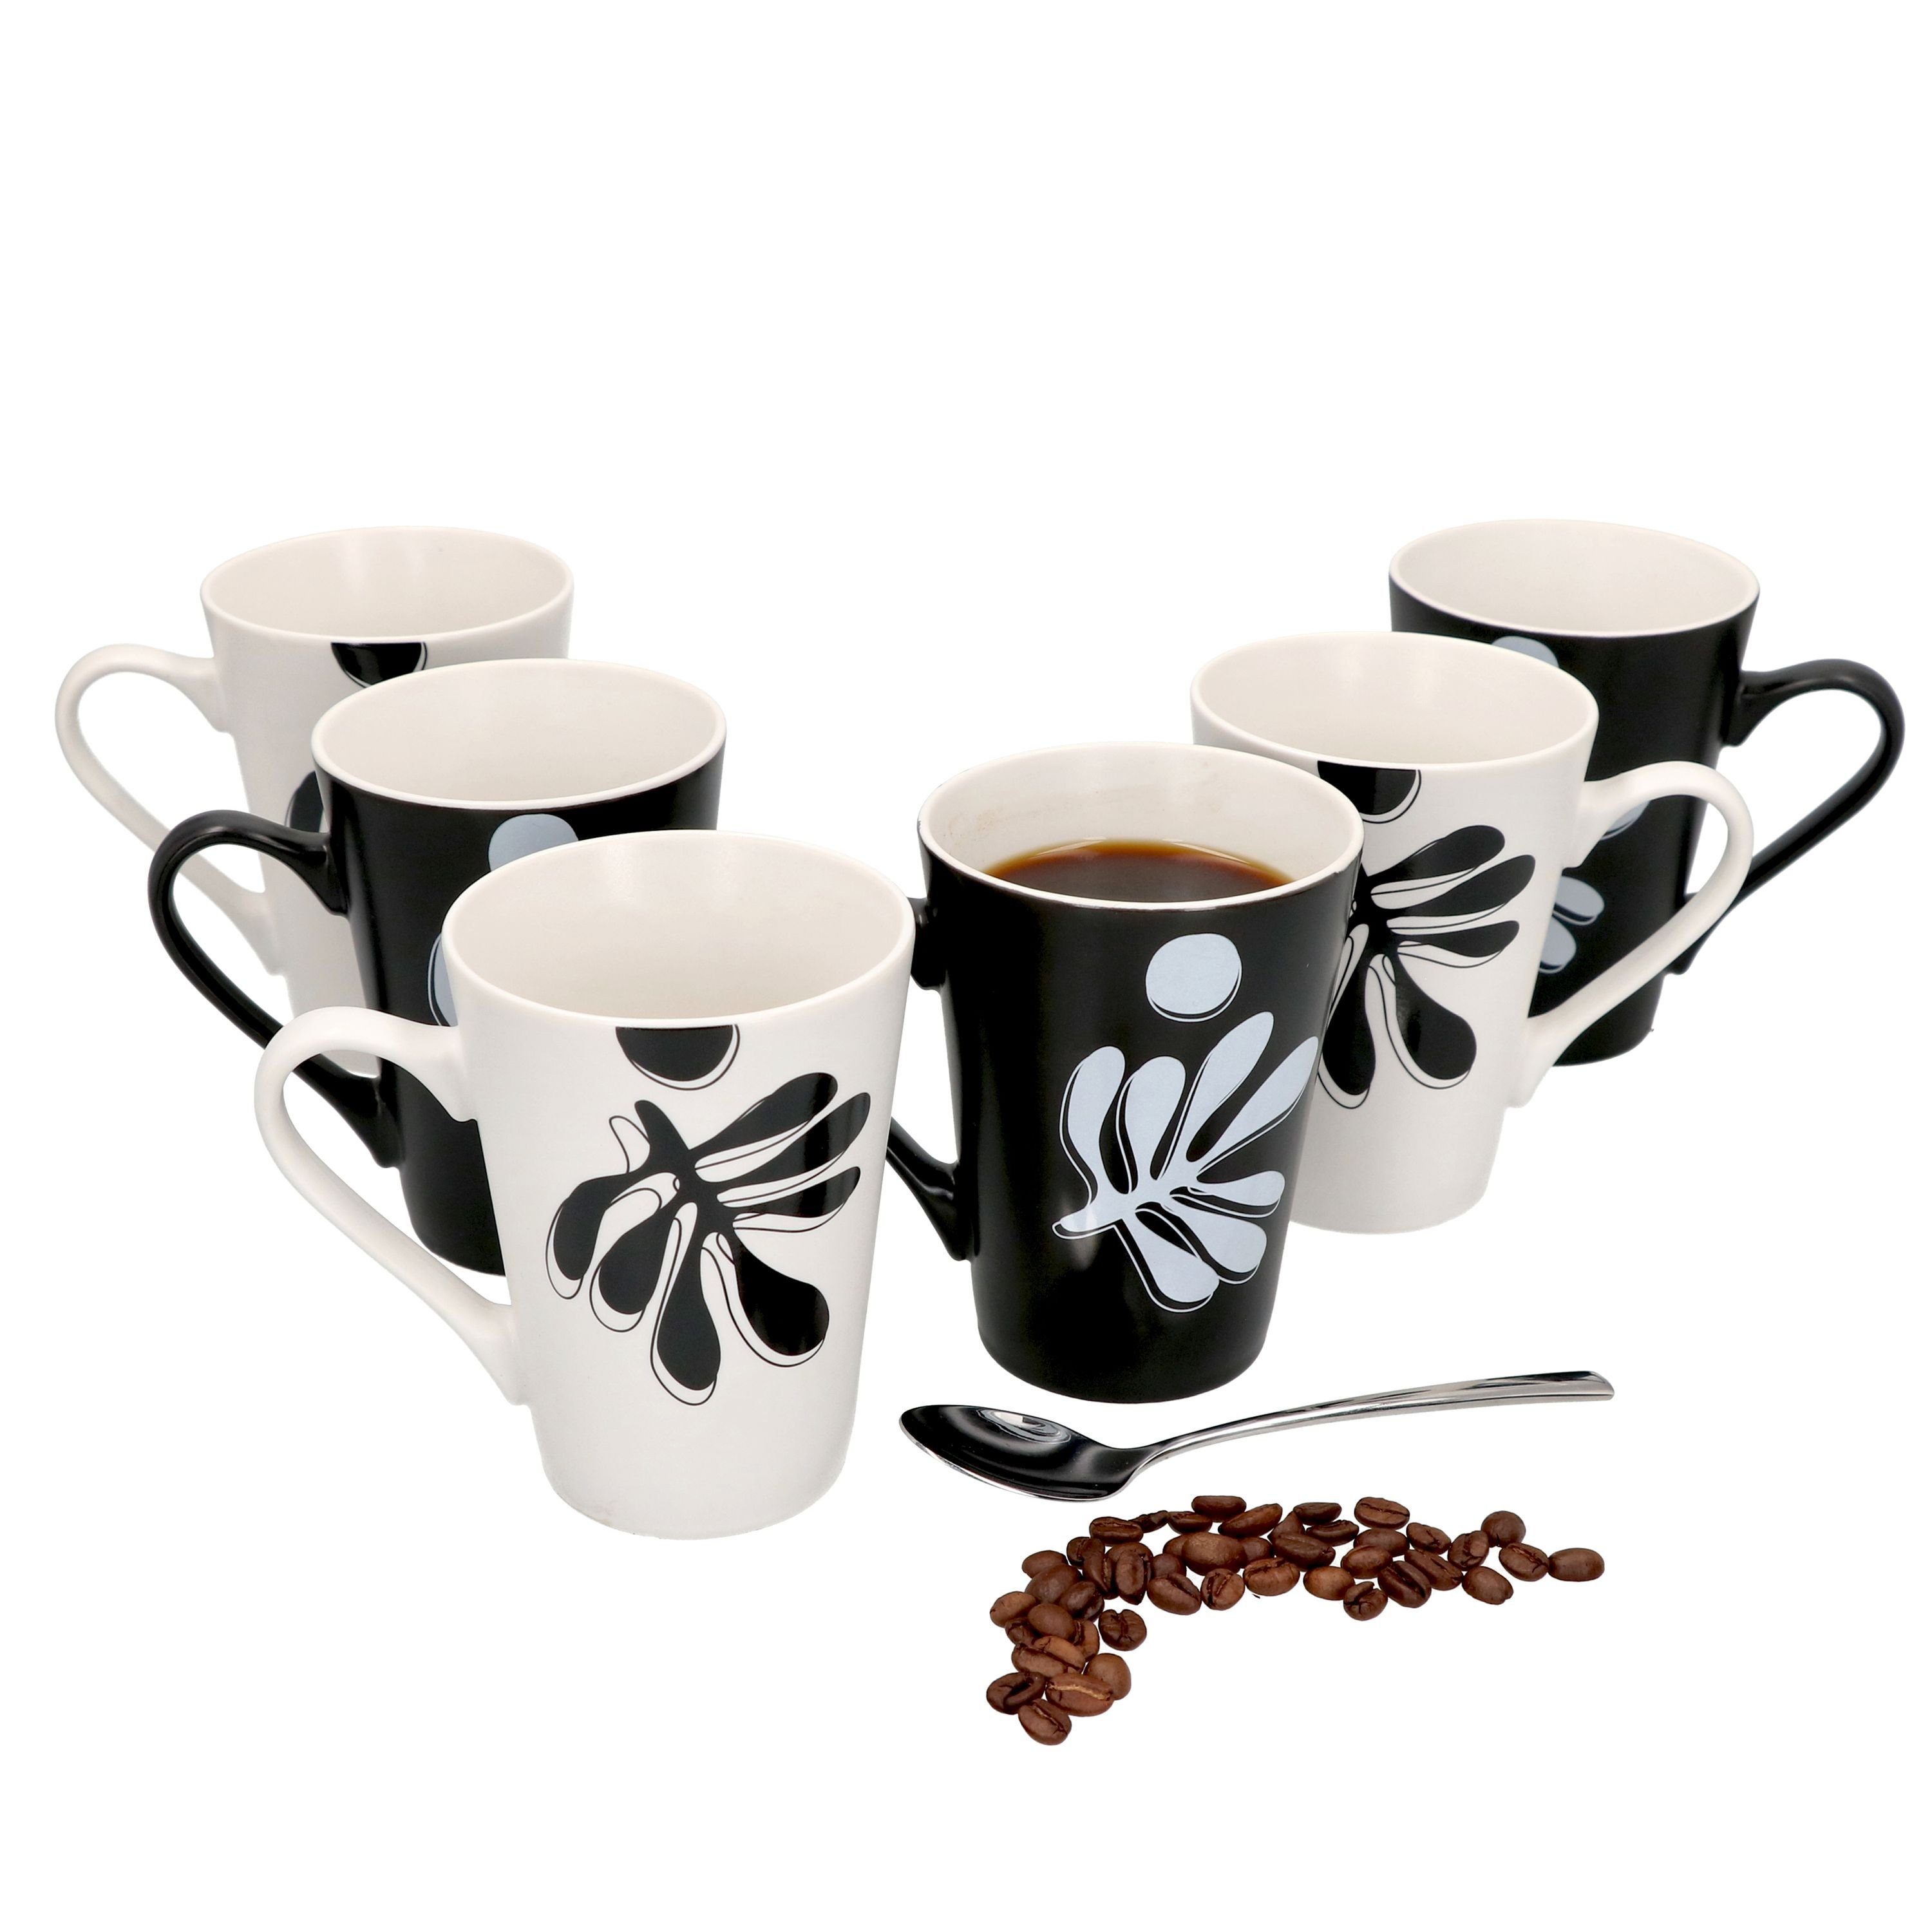 MamboCat Becher 6er Set Kaffeebecher Matty 250ml 3x schwarz & 3x weiß - 2016732